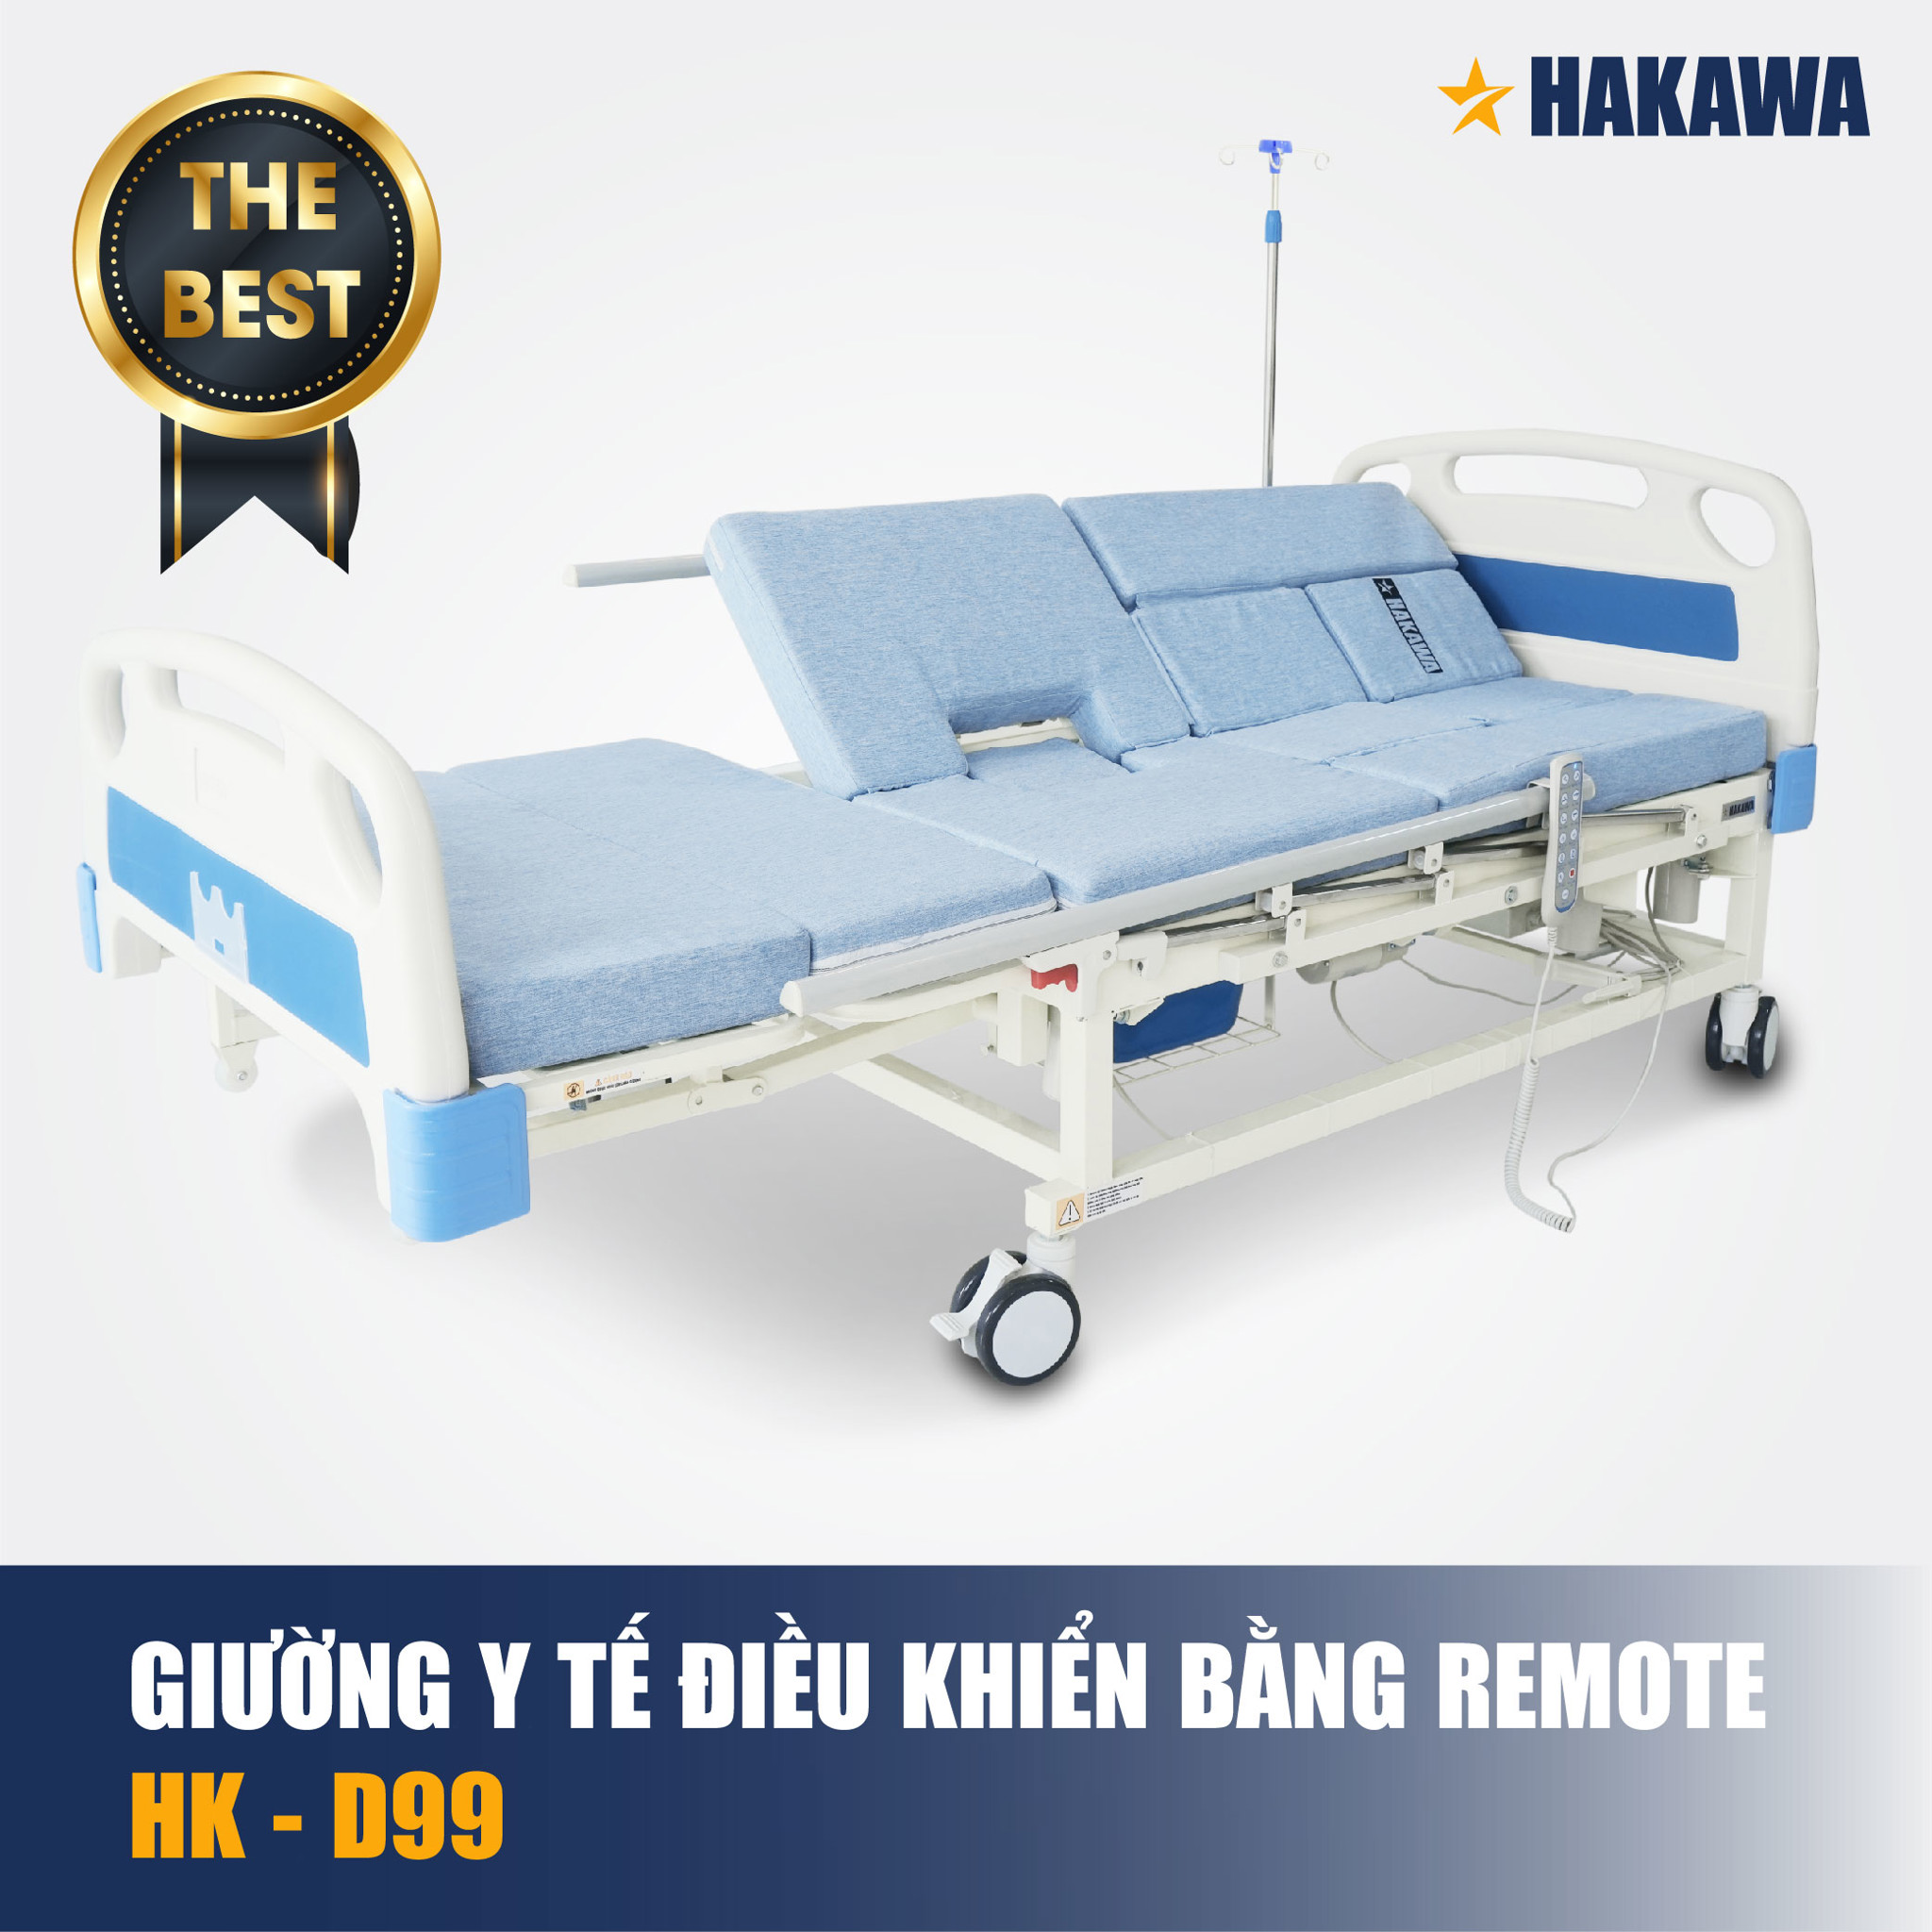 Giường y tế Hakawa HK-D99 được điều khiểu bằng remote thông minh